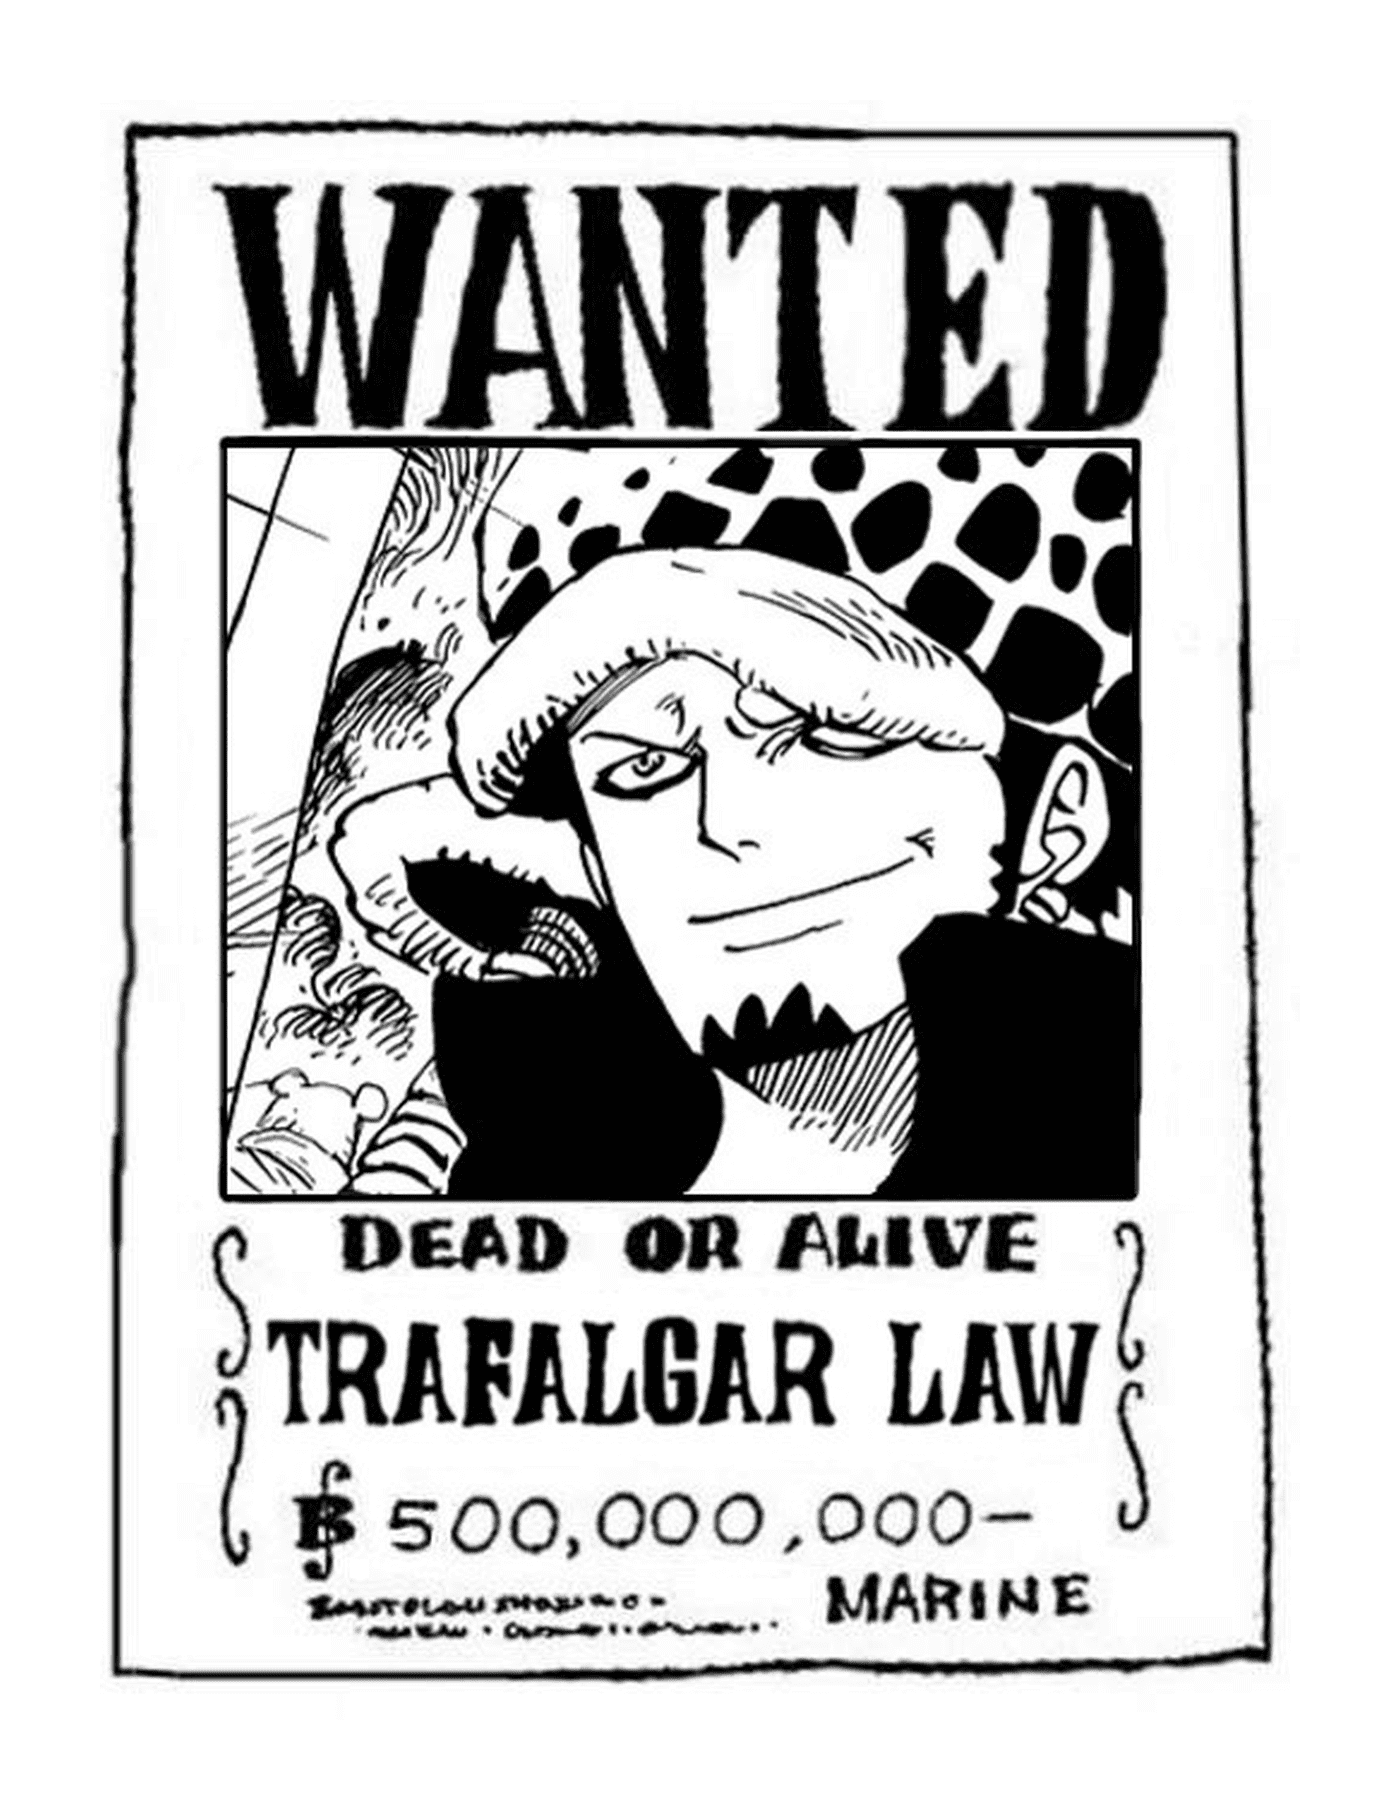  Wanted Trafalgar Law, dead or alive 